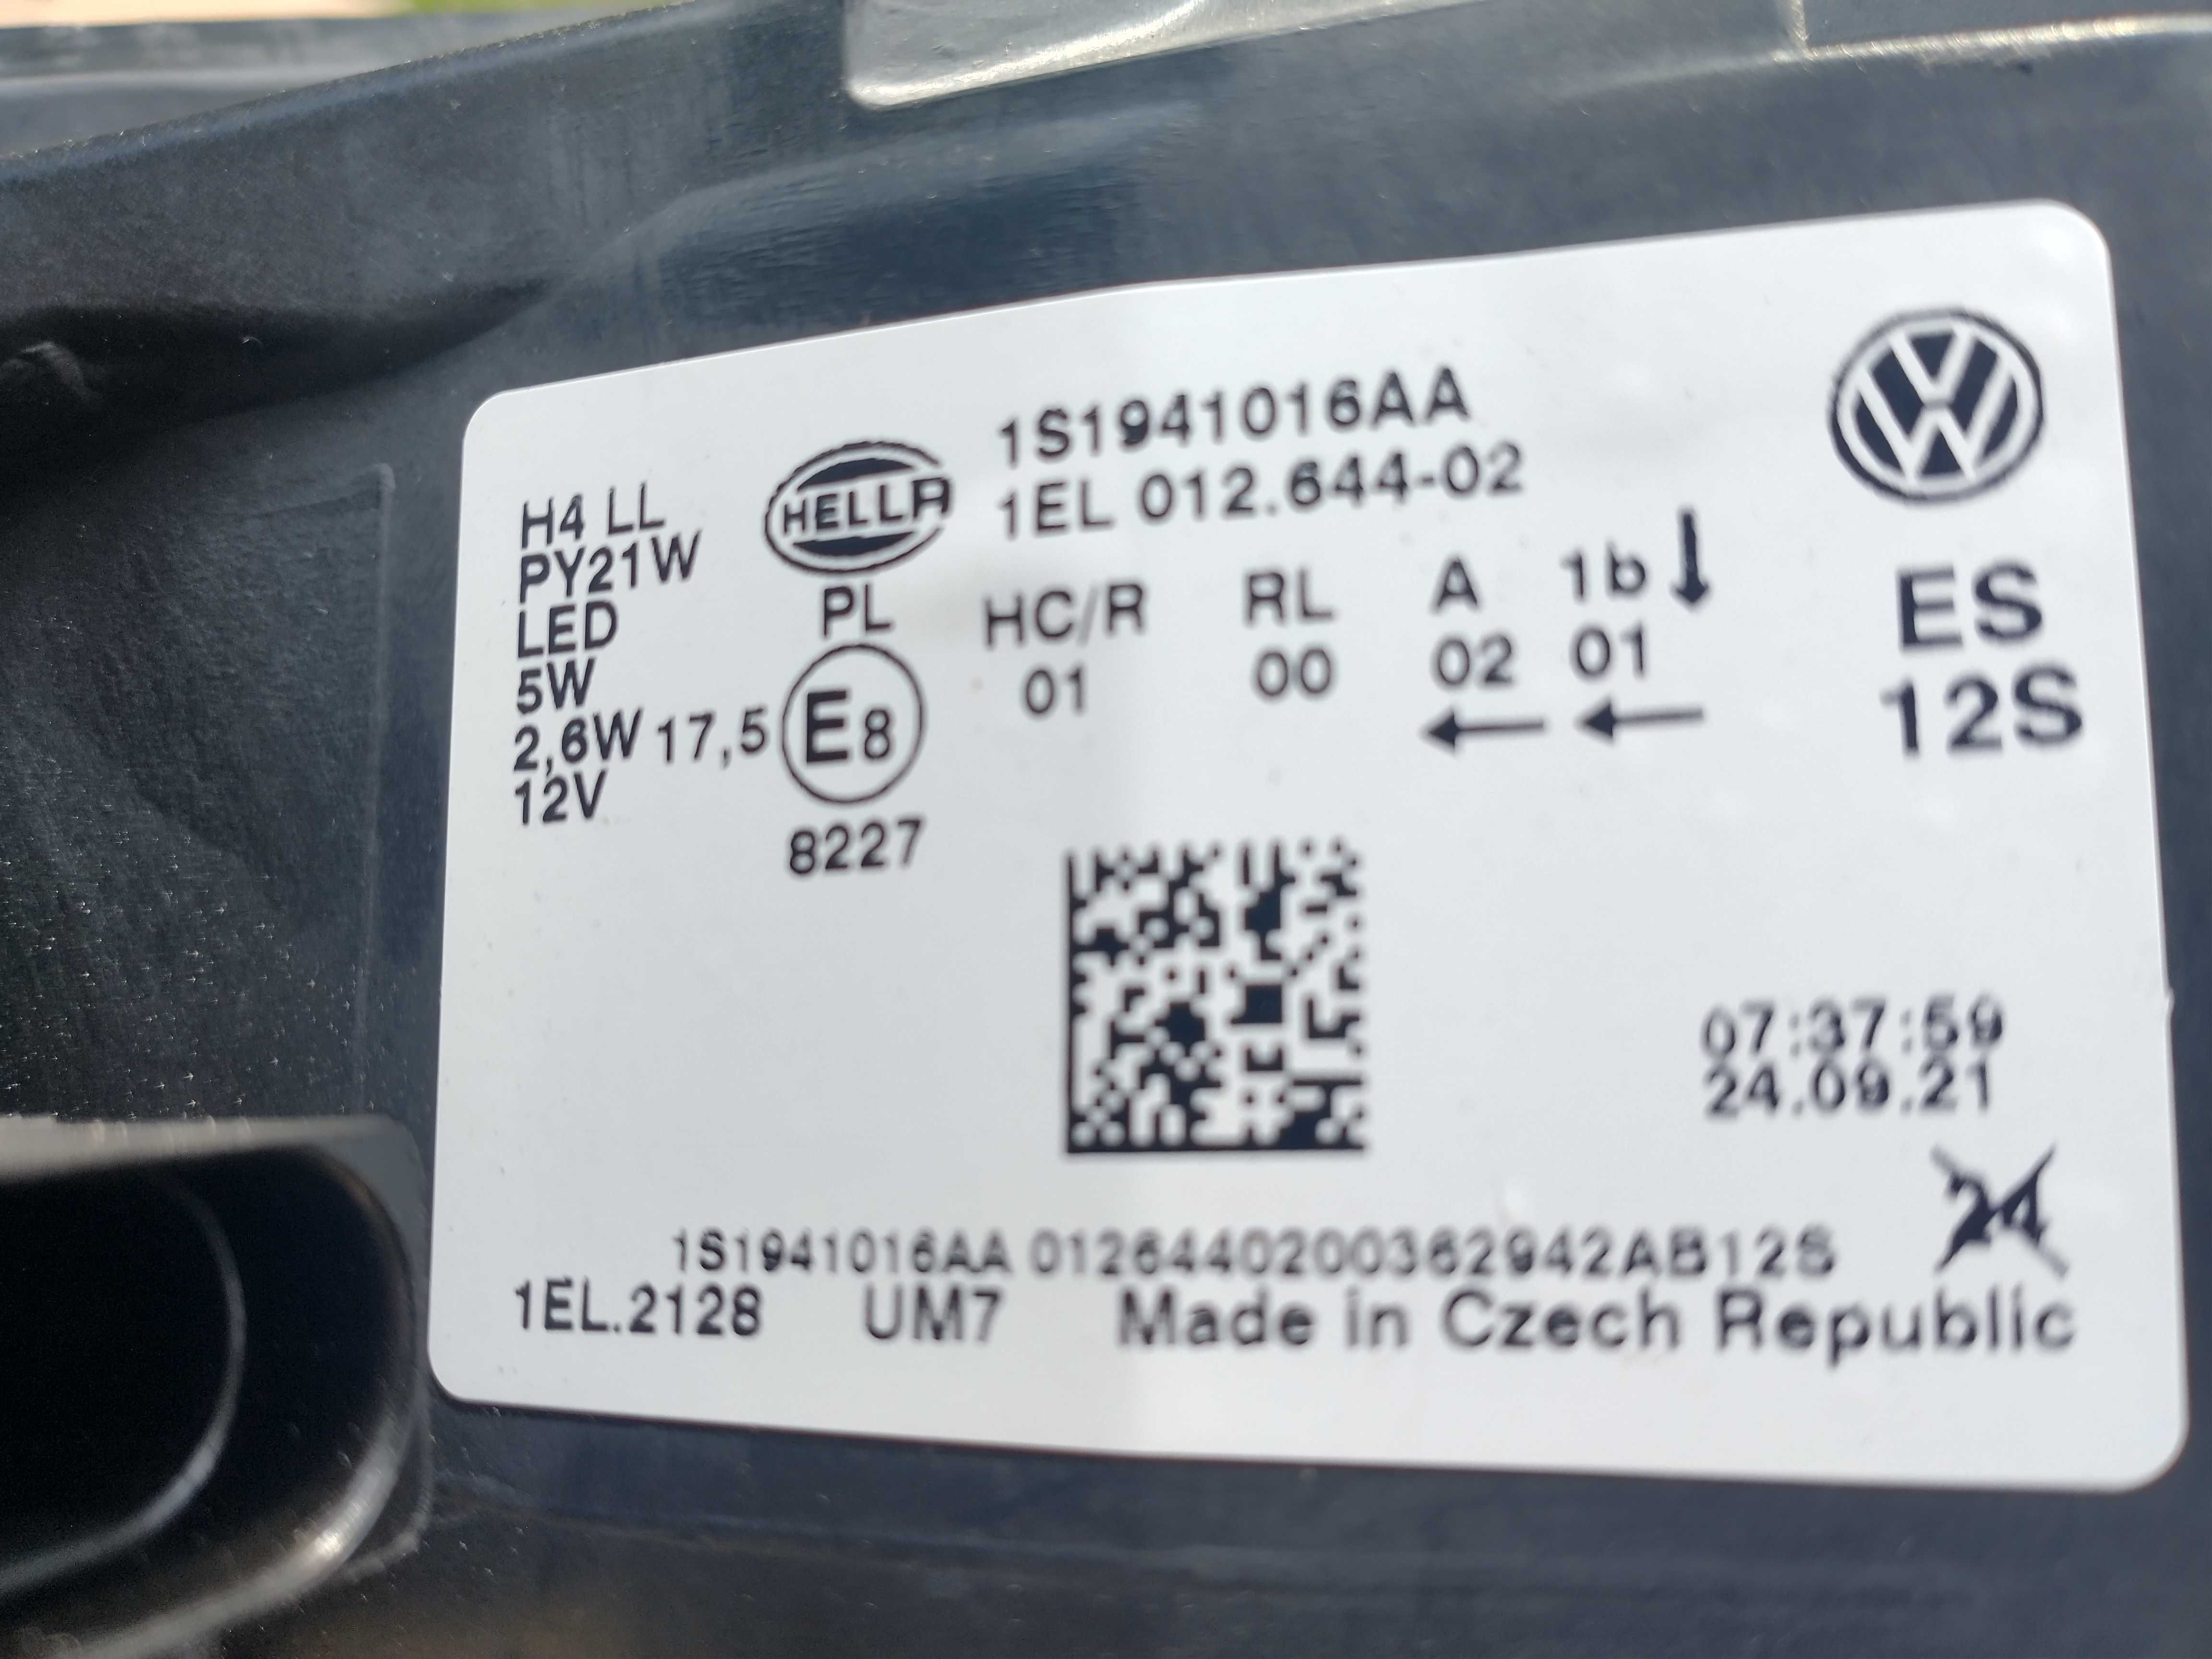 Lampa przednia prawa do VW - UP / 1EL.012.644.02